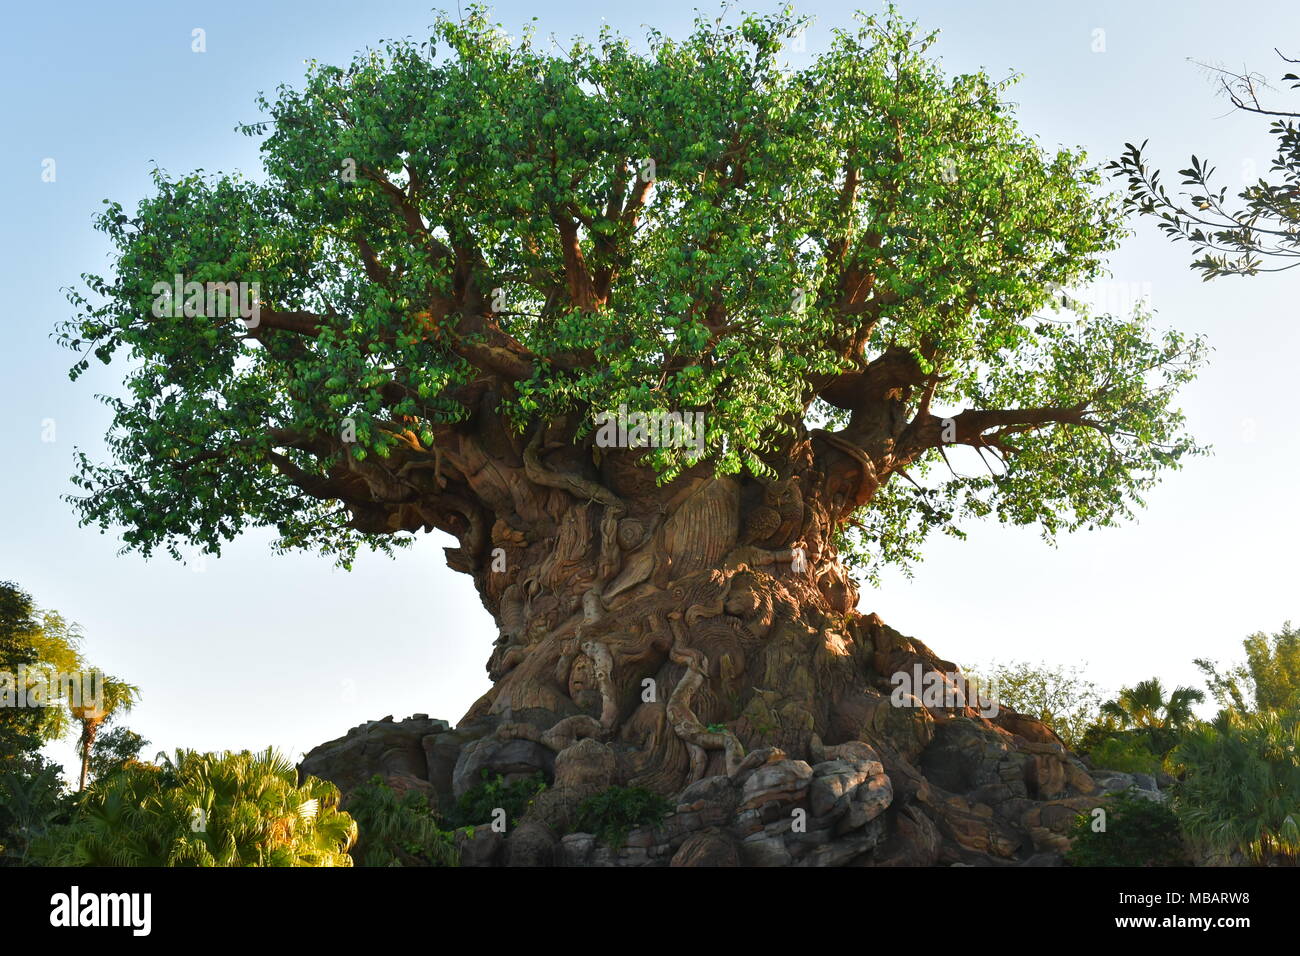 Tree of Life at Animal Kingdom Park Stock Photo